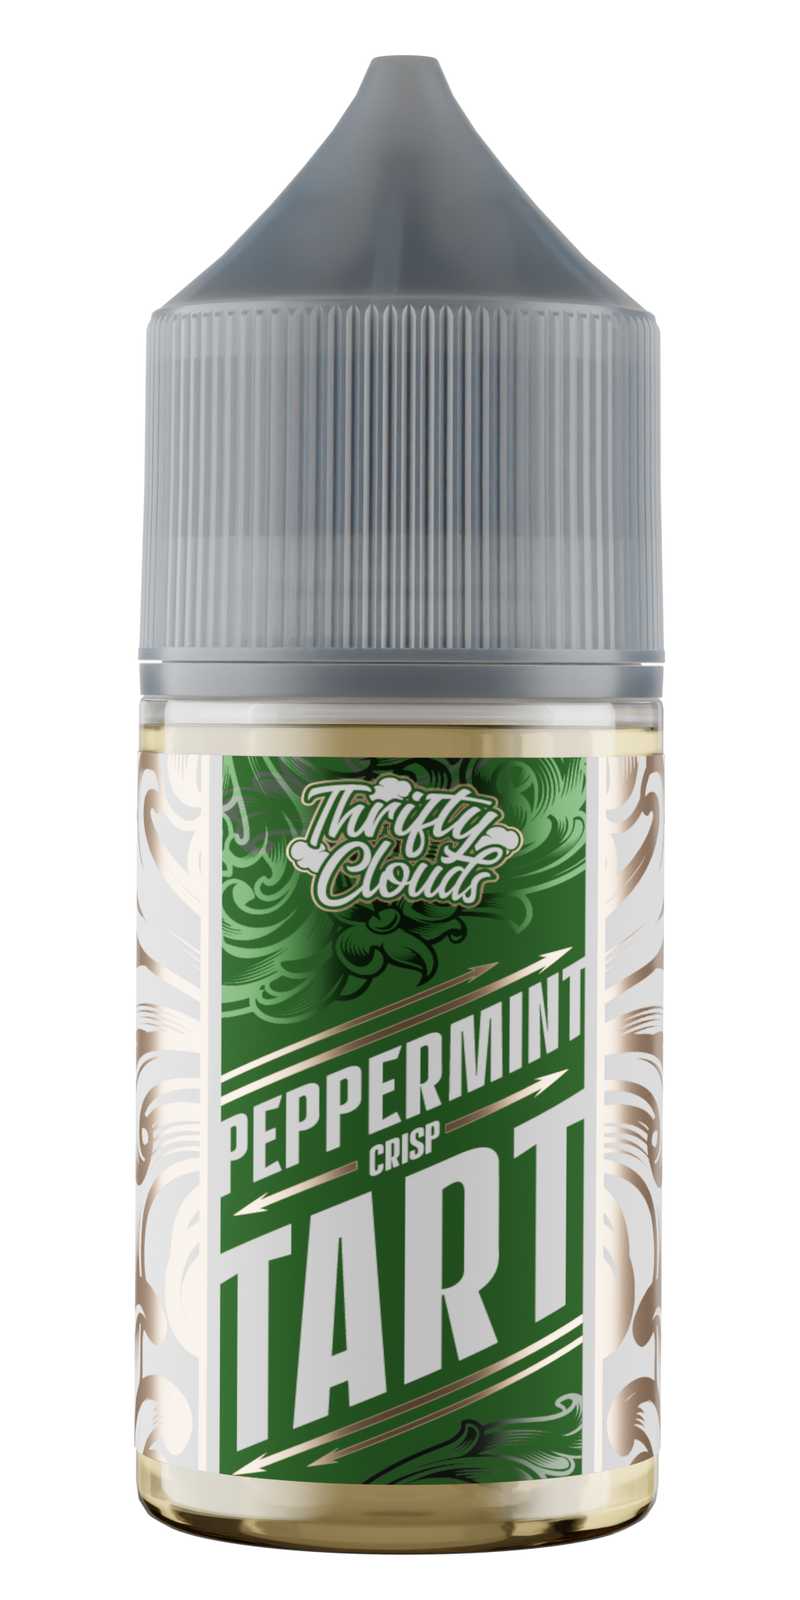 Bewolk - Thrifty Clouds Peppermint Crisp Tart Salts 30ml